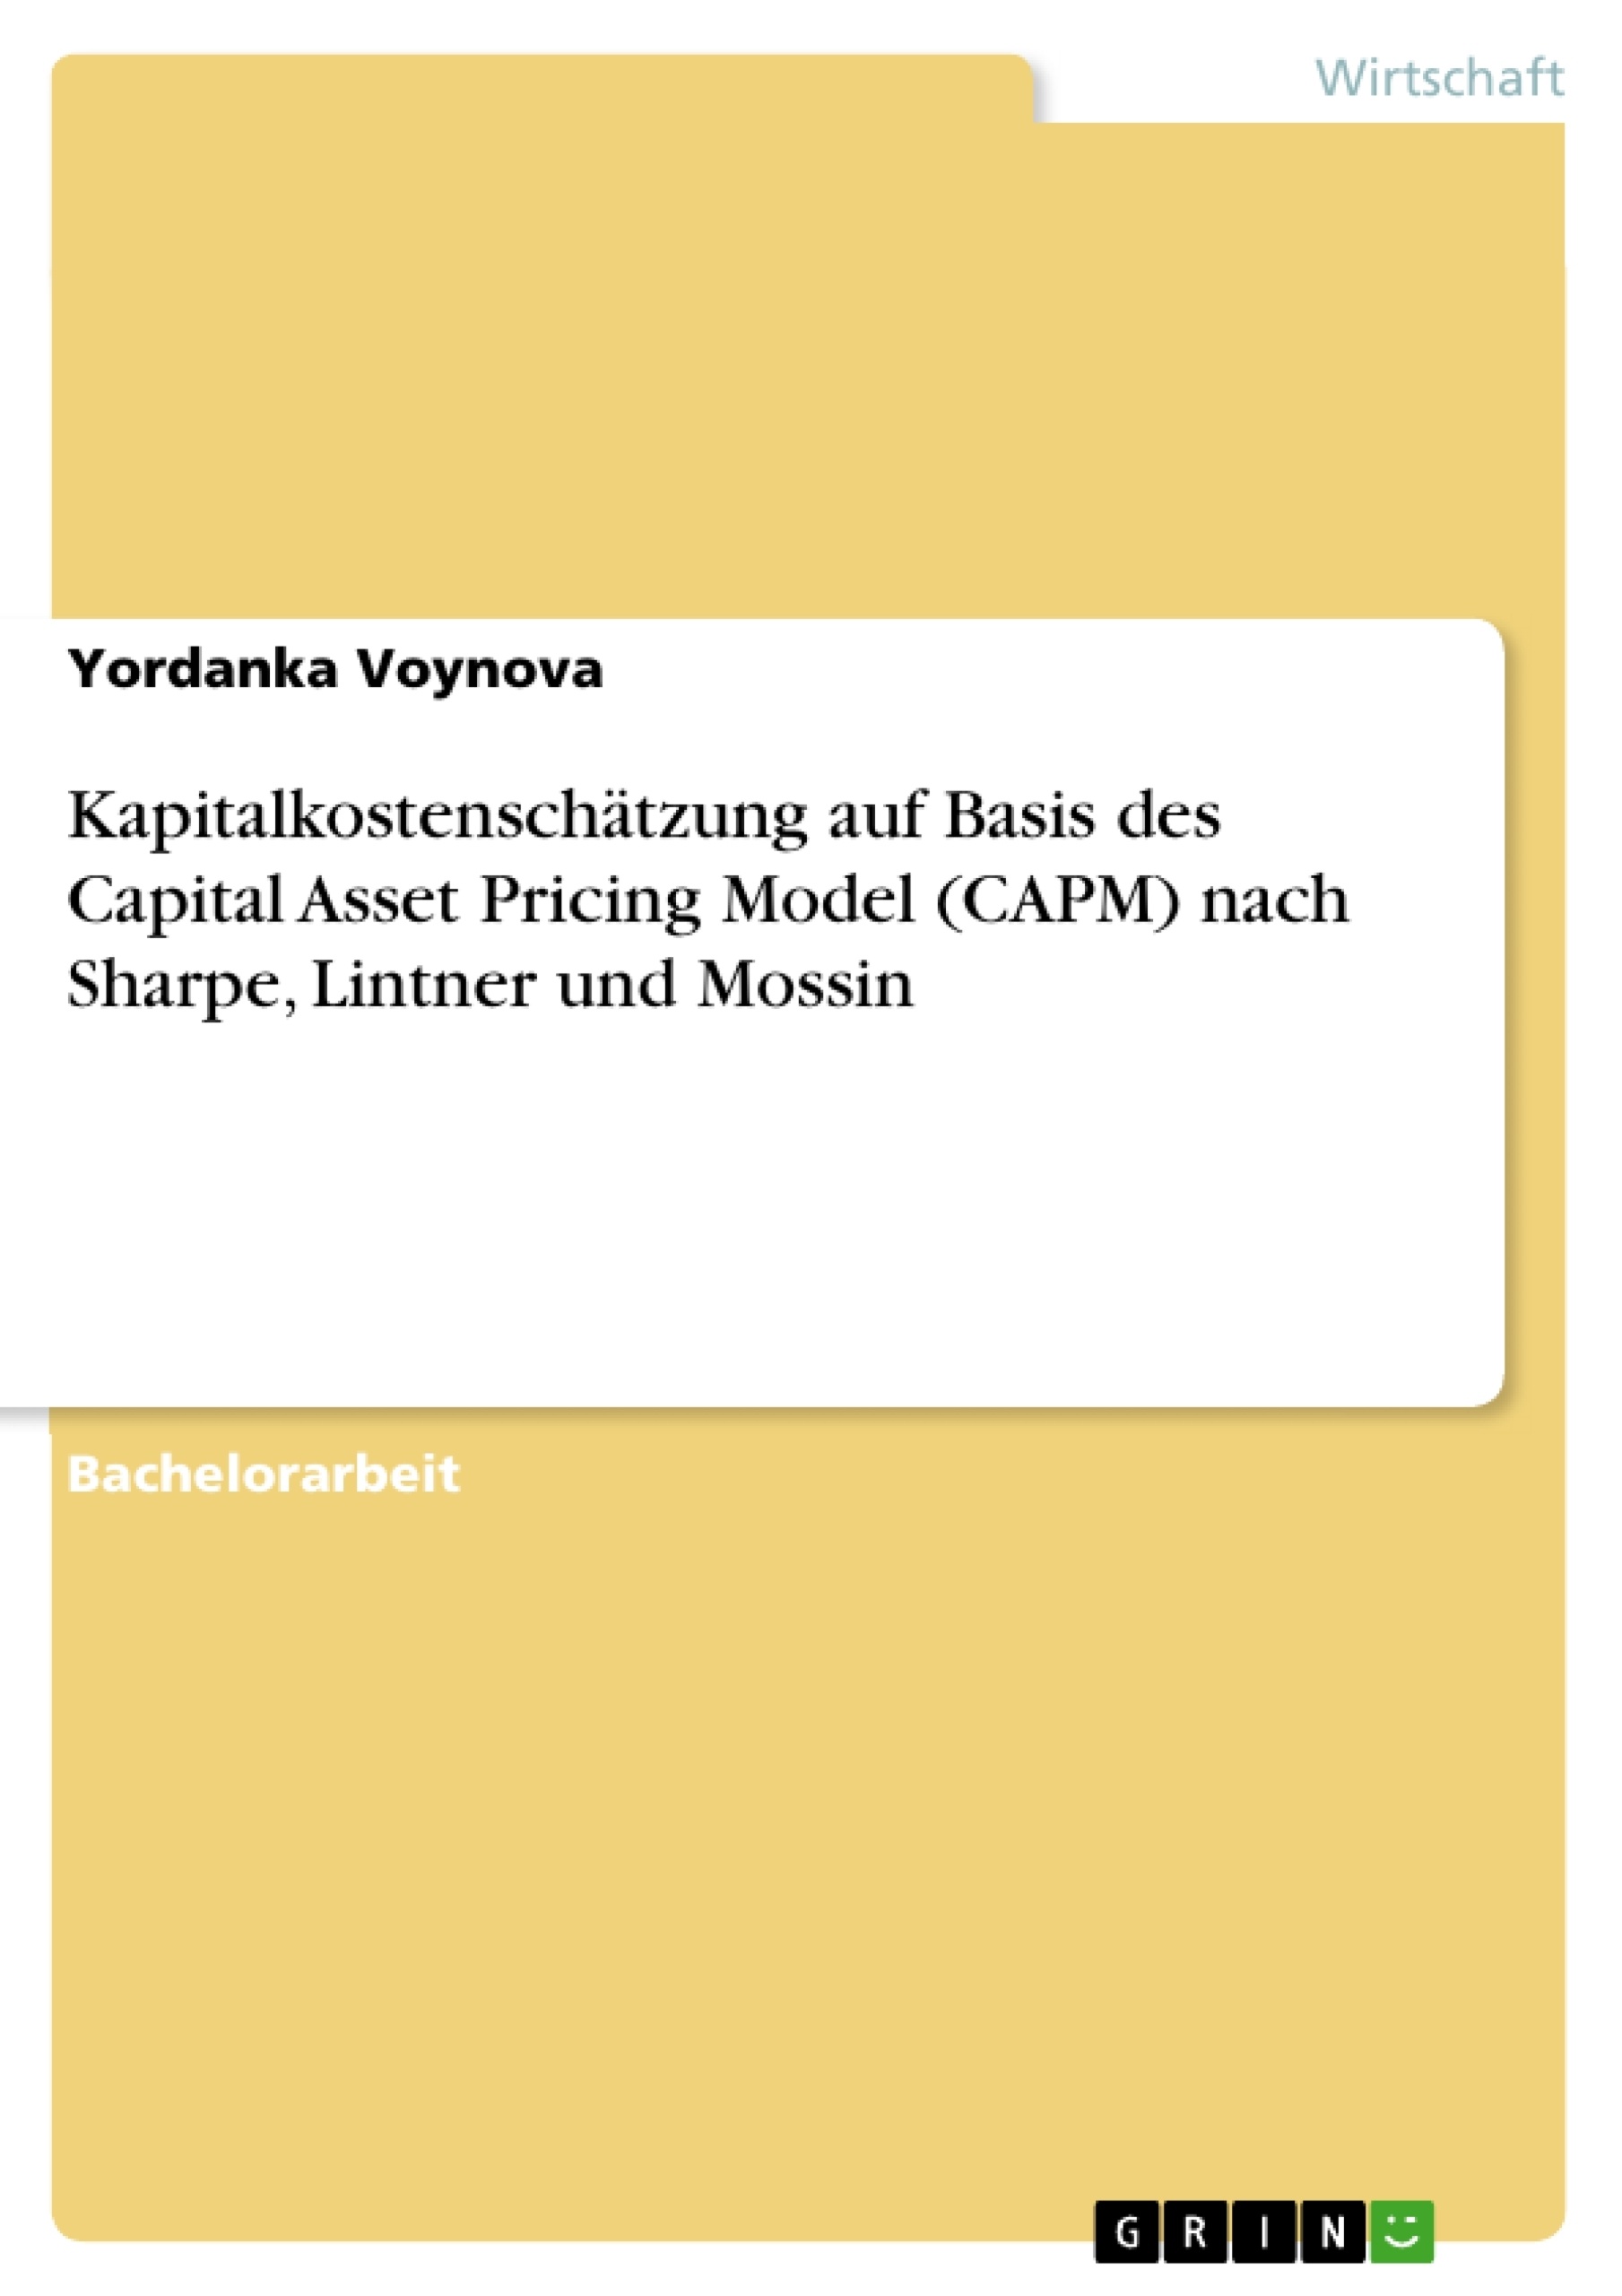 Title: Kapitalkostenschätzung auf Basis des Capital Asset Pricing Model (CAPM) nach Sharpe, Lintner und Mossin